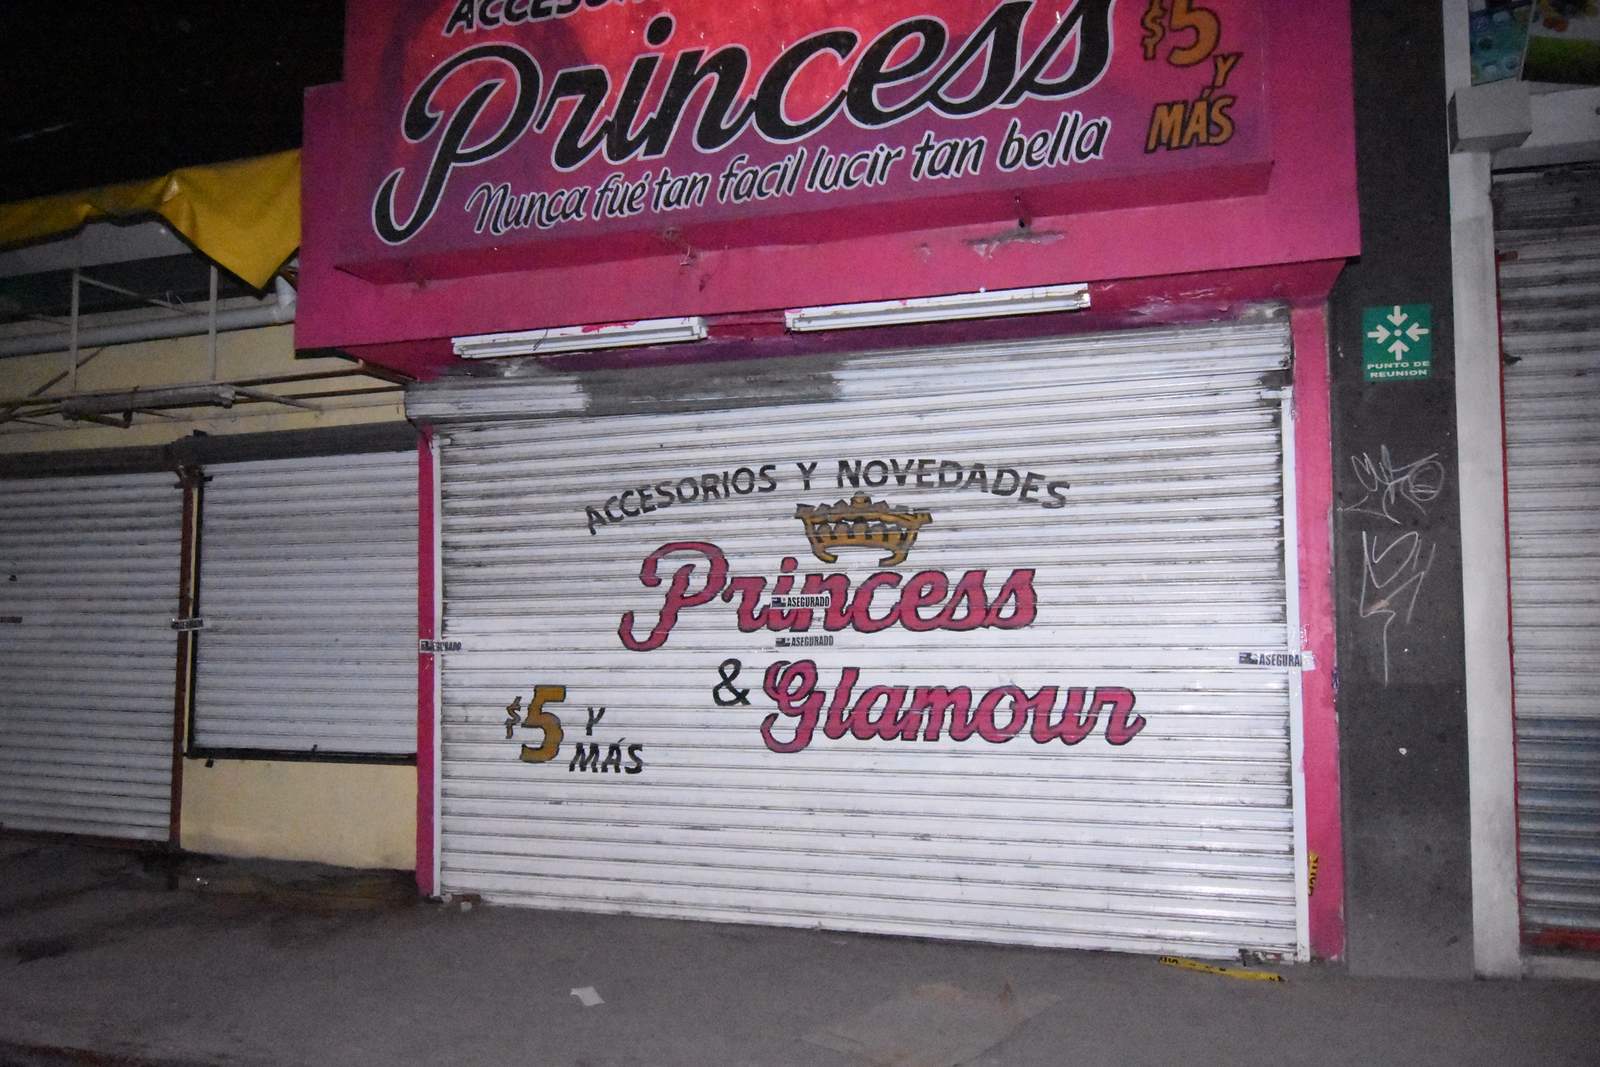 Una mujer, al parecer propietaria de la tienda de lencería y accesorios Princess fue la primer persona arrestada y su negocio clausurado. (ESPECIAL)